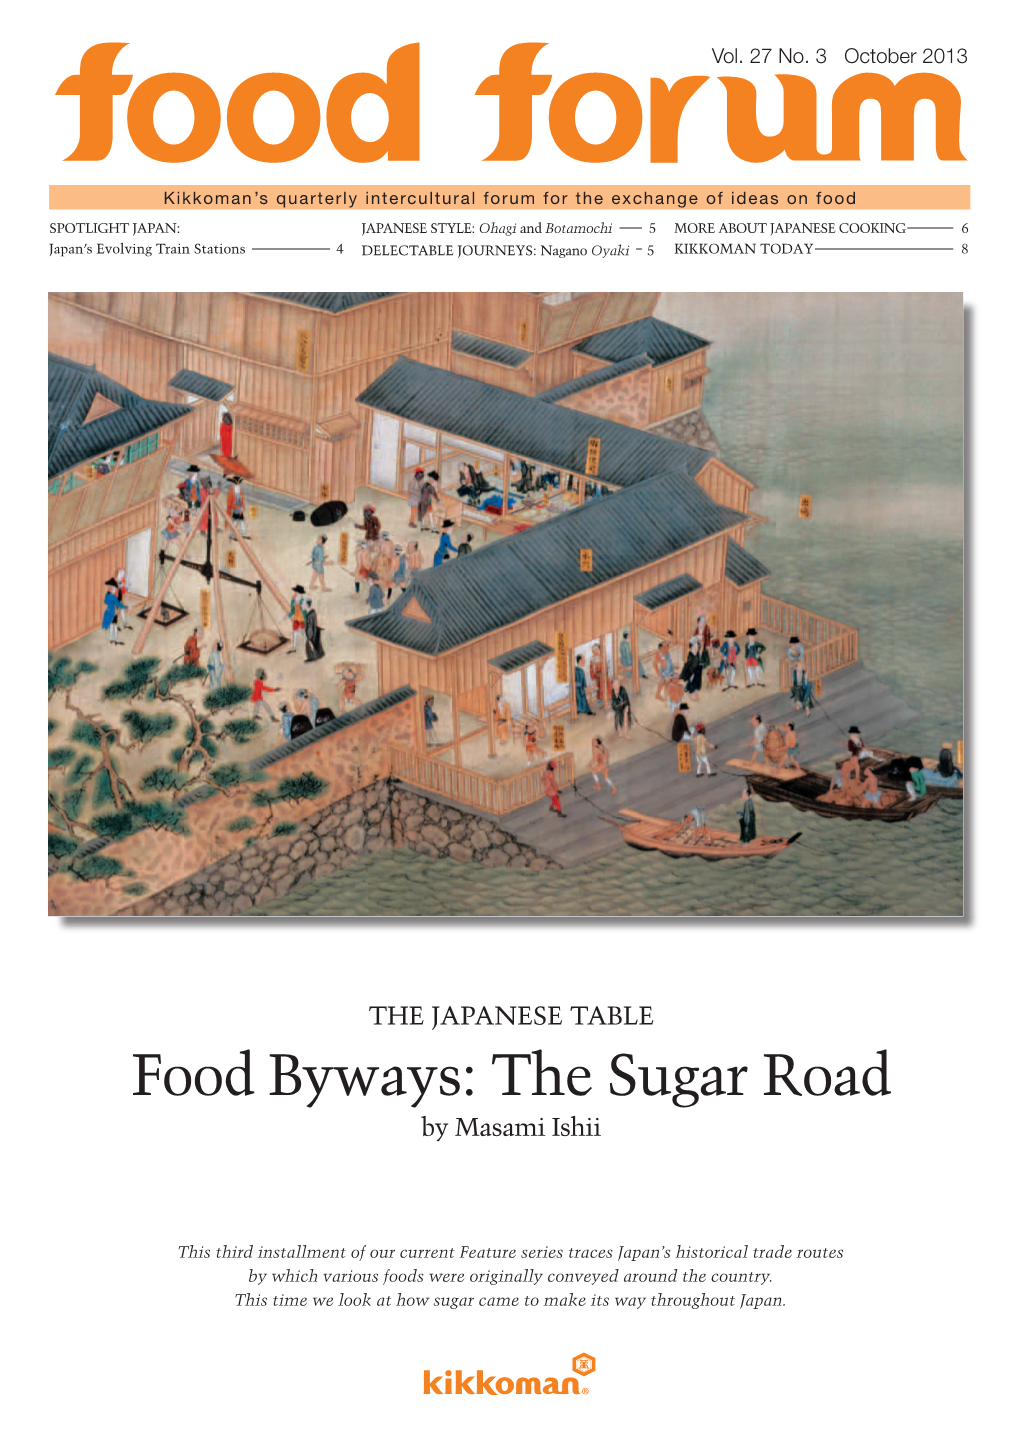 Food Byways: the Sugar Road by Masami Ishii